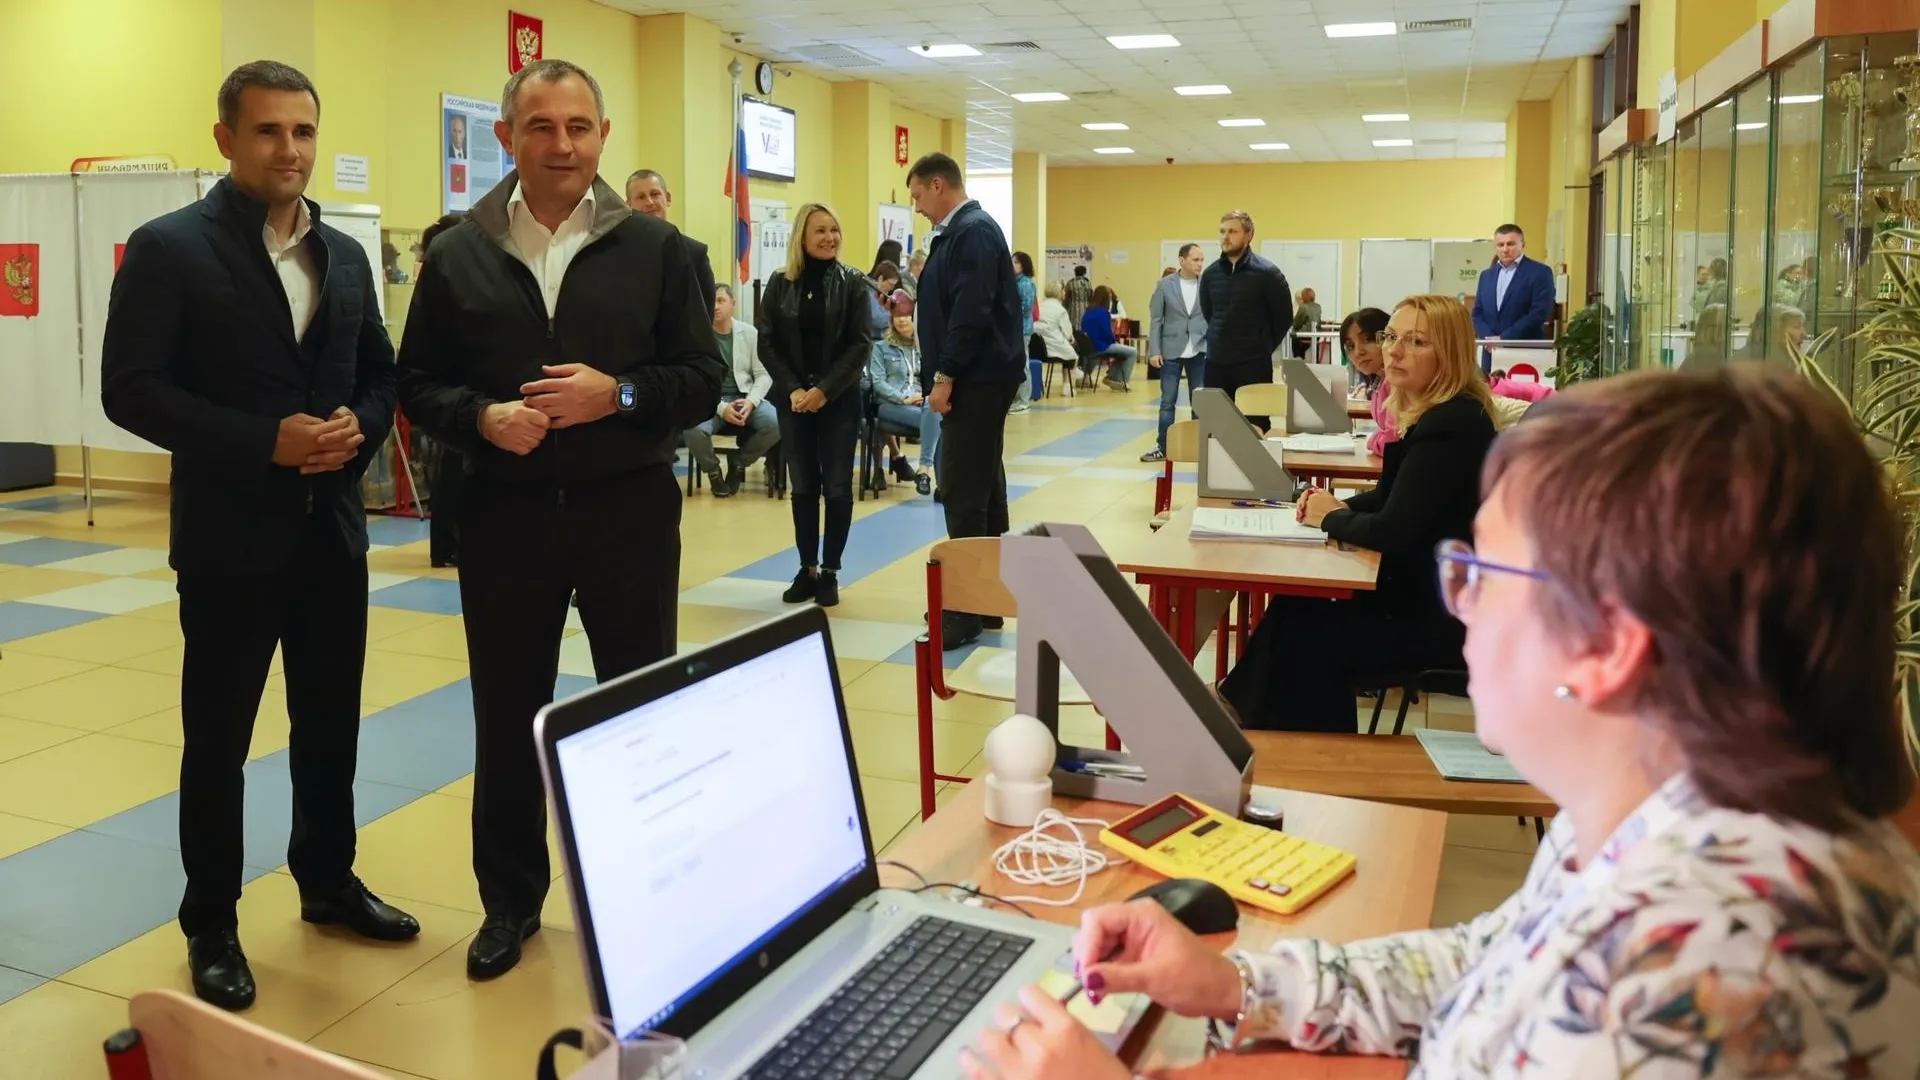 Всё работает в штатном режиме: председатель Московской областной Думы проверил избирательные участки в Реутове